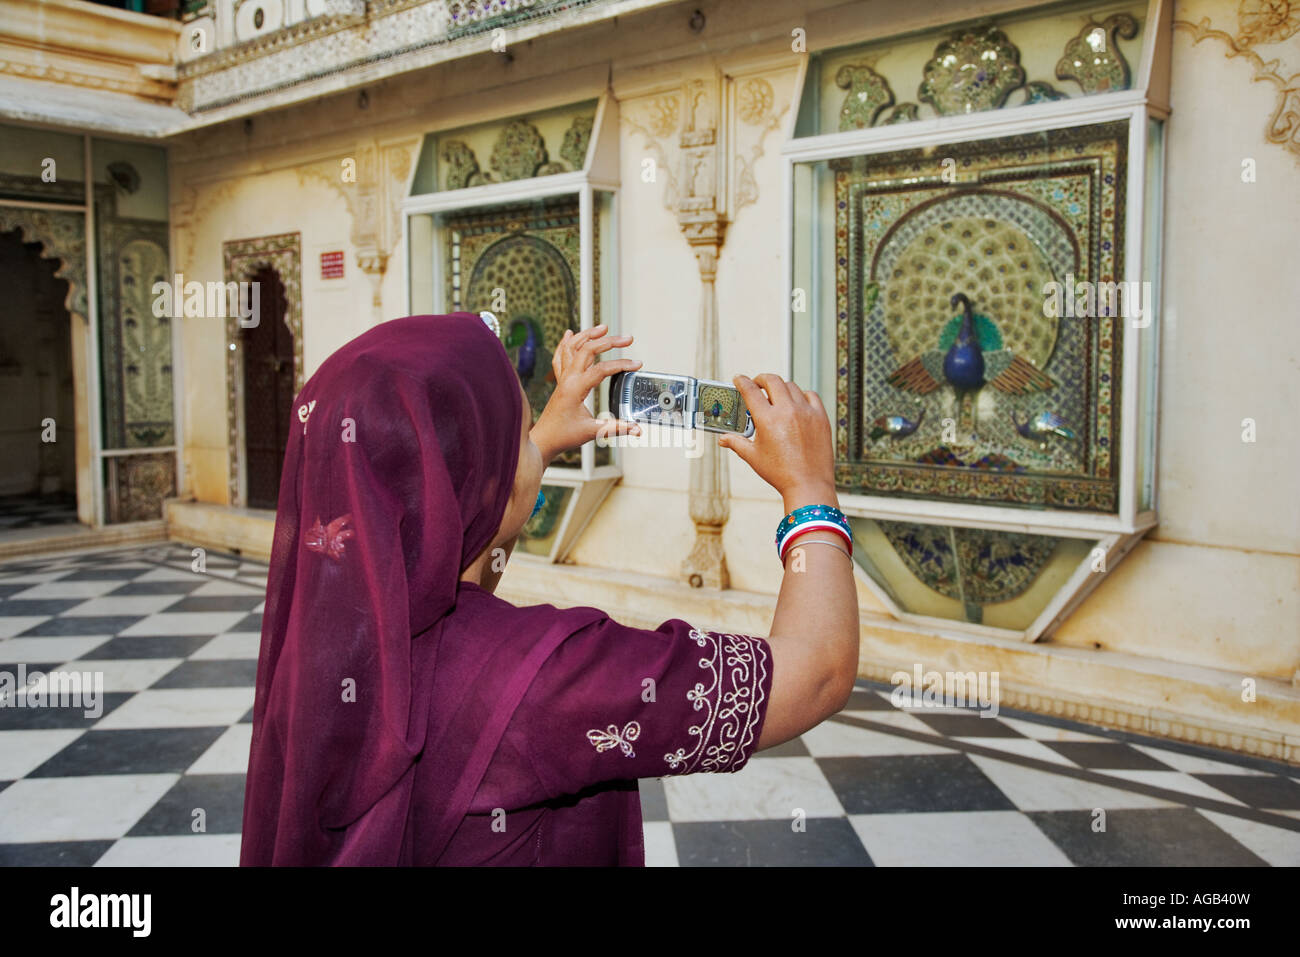 Femme indienne dans un beau sari de prendre une photo dans le complexe City Palace à Udaipur Inde Banque D'Images